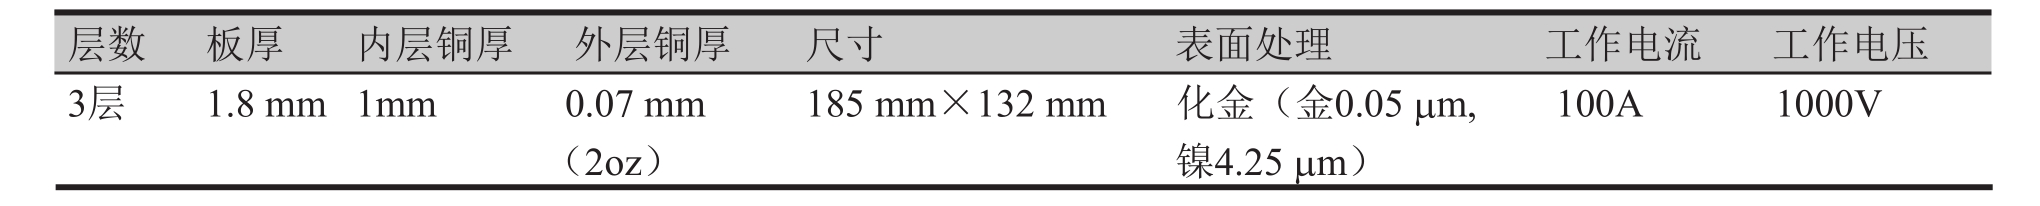 表4 超厚铜PCB主要规格参数